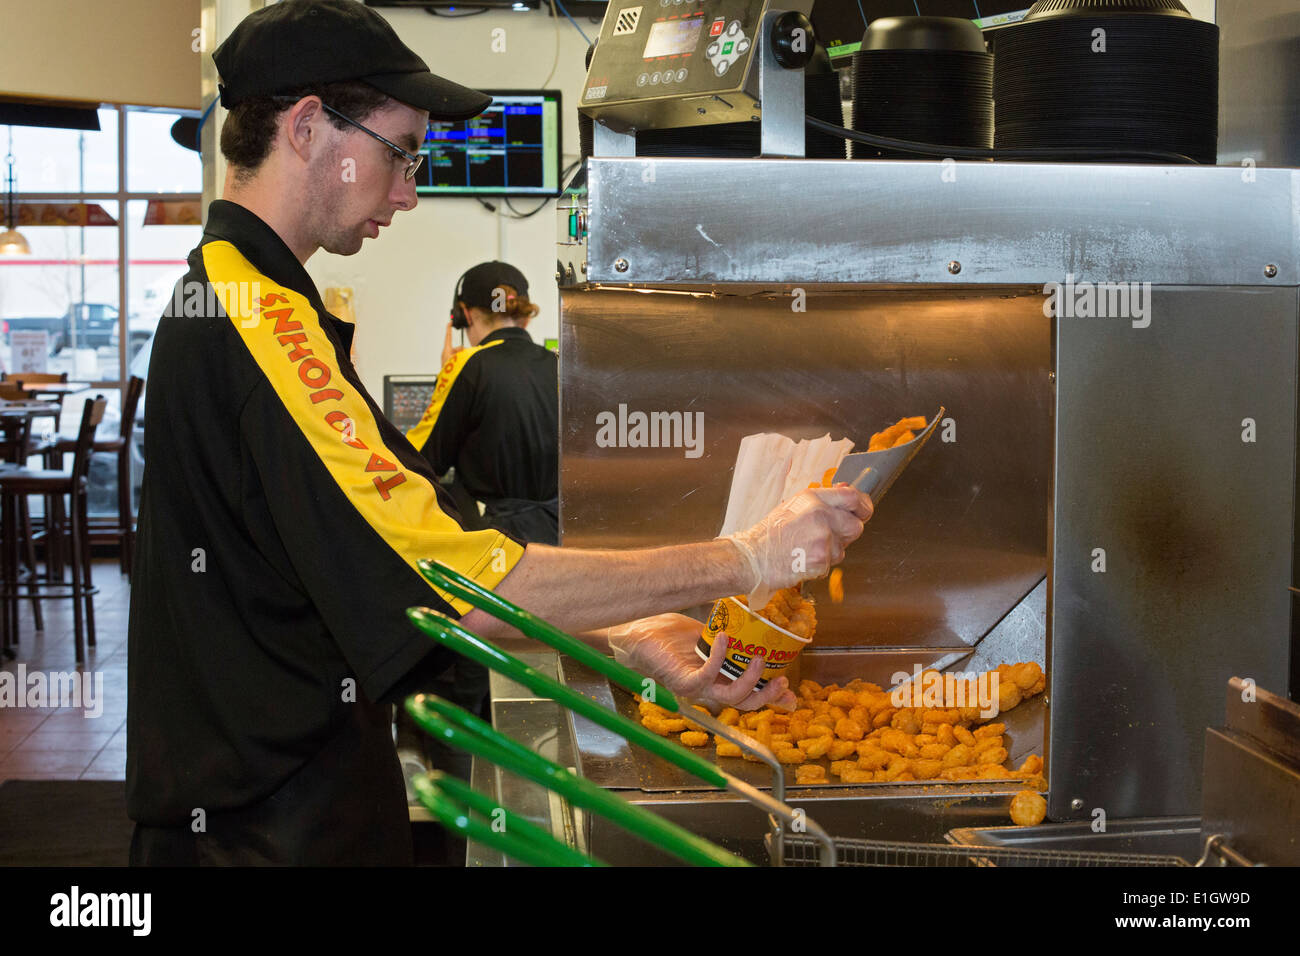 Watford City North Dakota - Taco John è un ristorante fast food, che paga un $16-$20 Salario di partenza per i nuovi assunti. Foto Stock